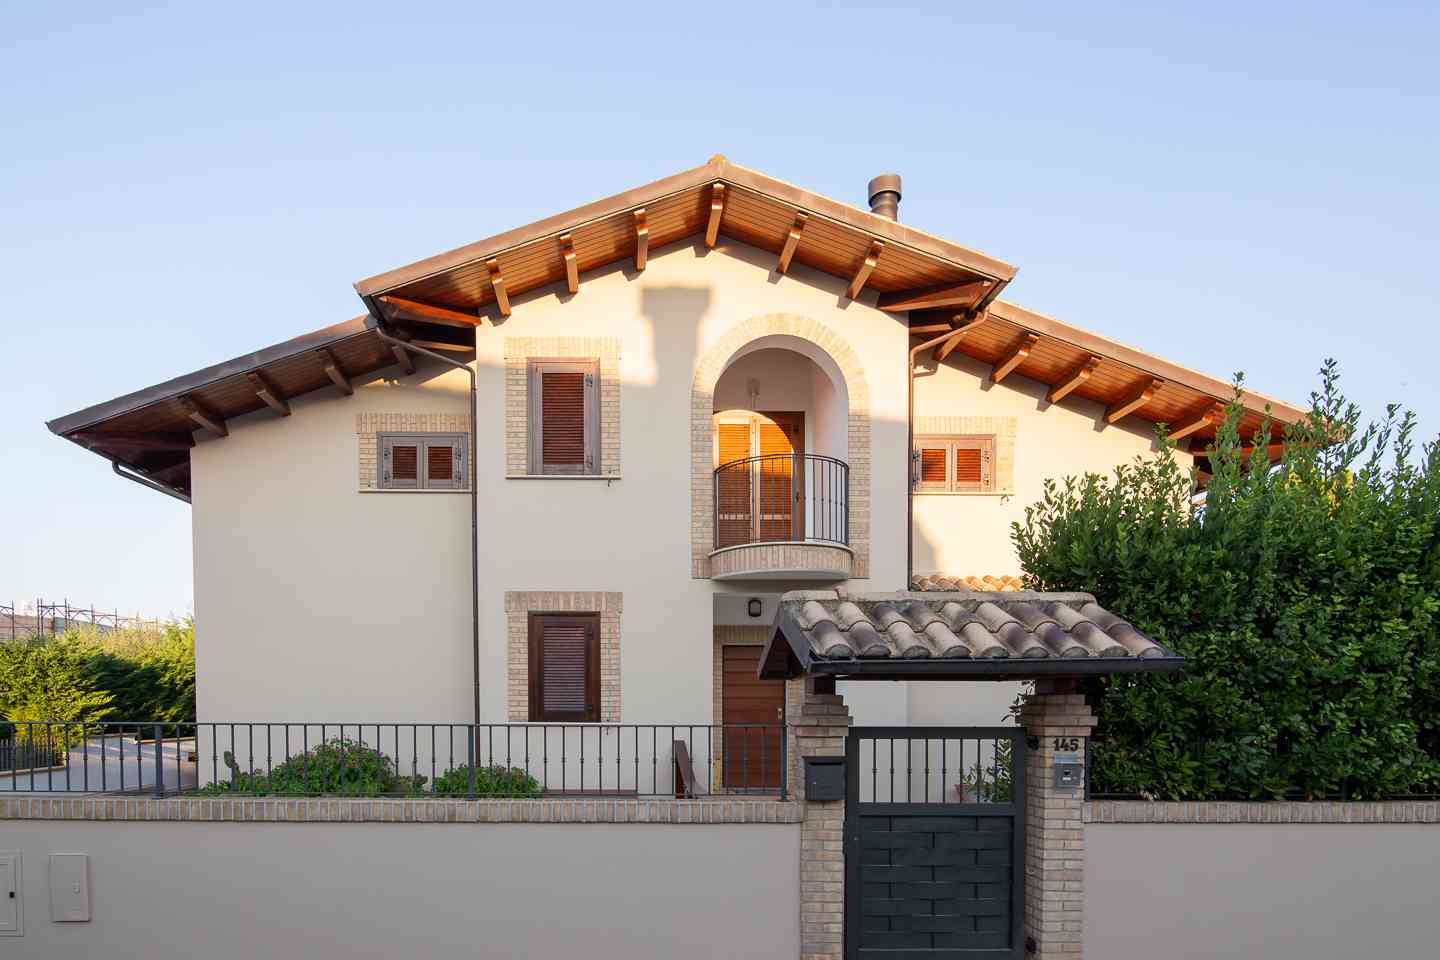 Casa indipendente Casa indipendente in vendita Collecorvino (PE), Villa Pini - Collecorvino - EUR 579.130 430 small